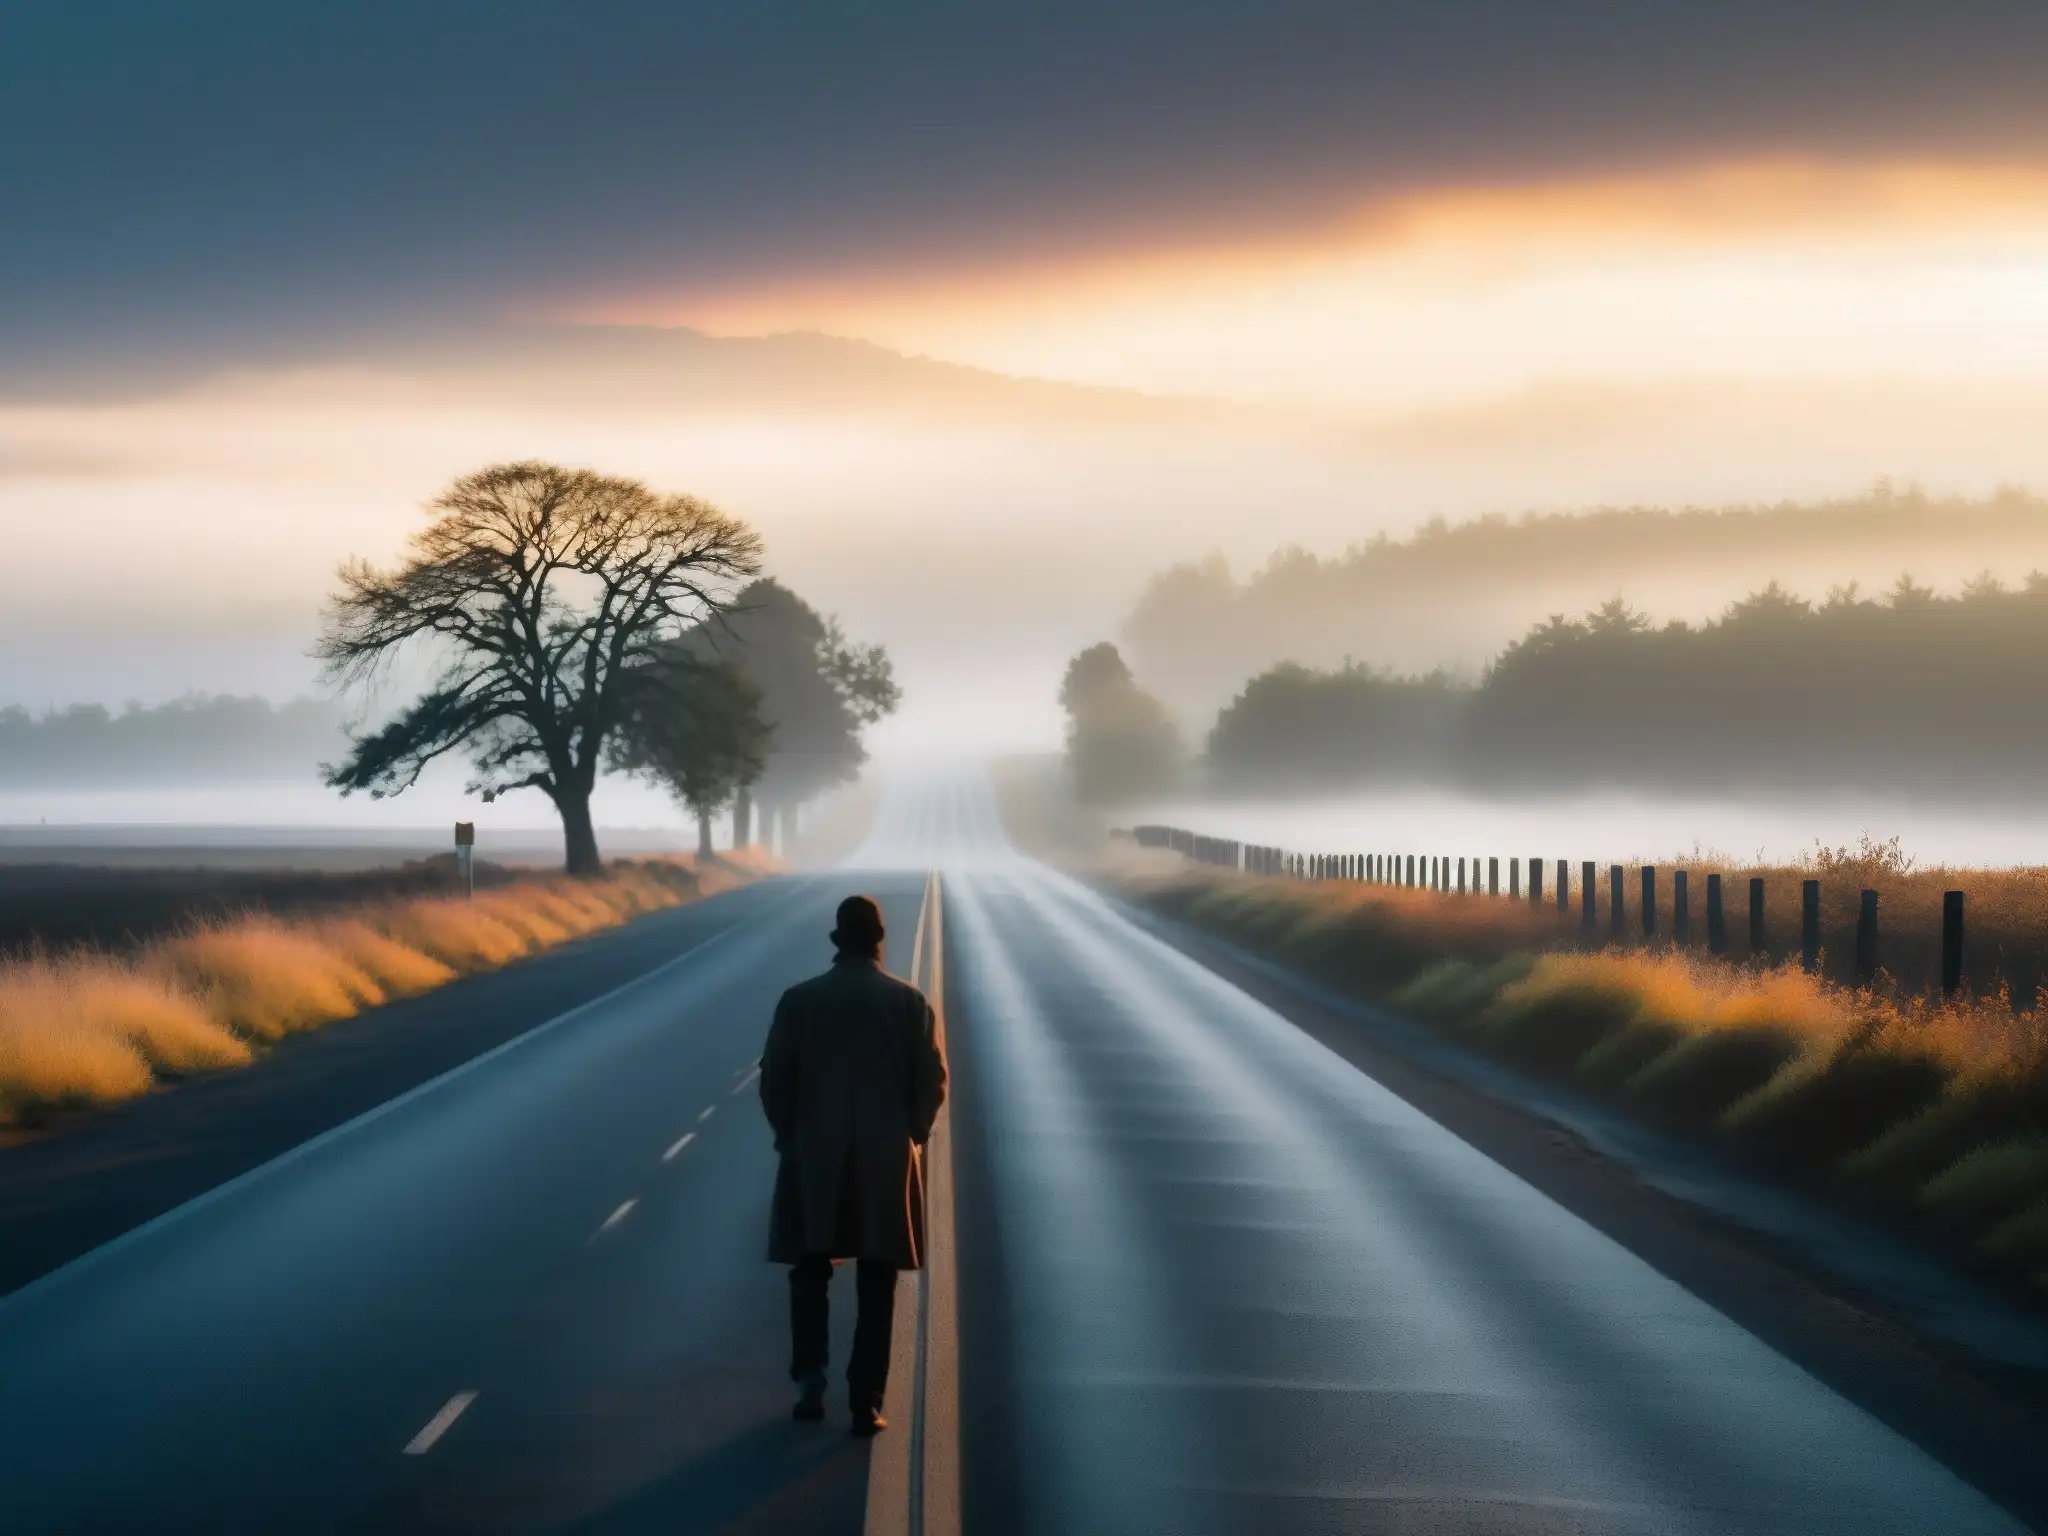 Un camino desolado al atardecer, con neblina misteriosa y una figura solitaria